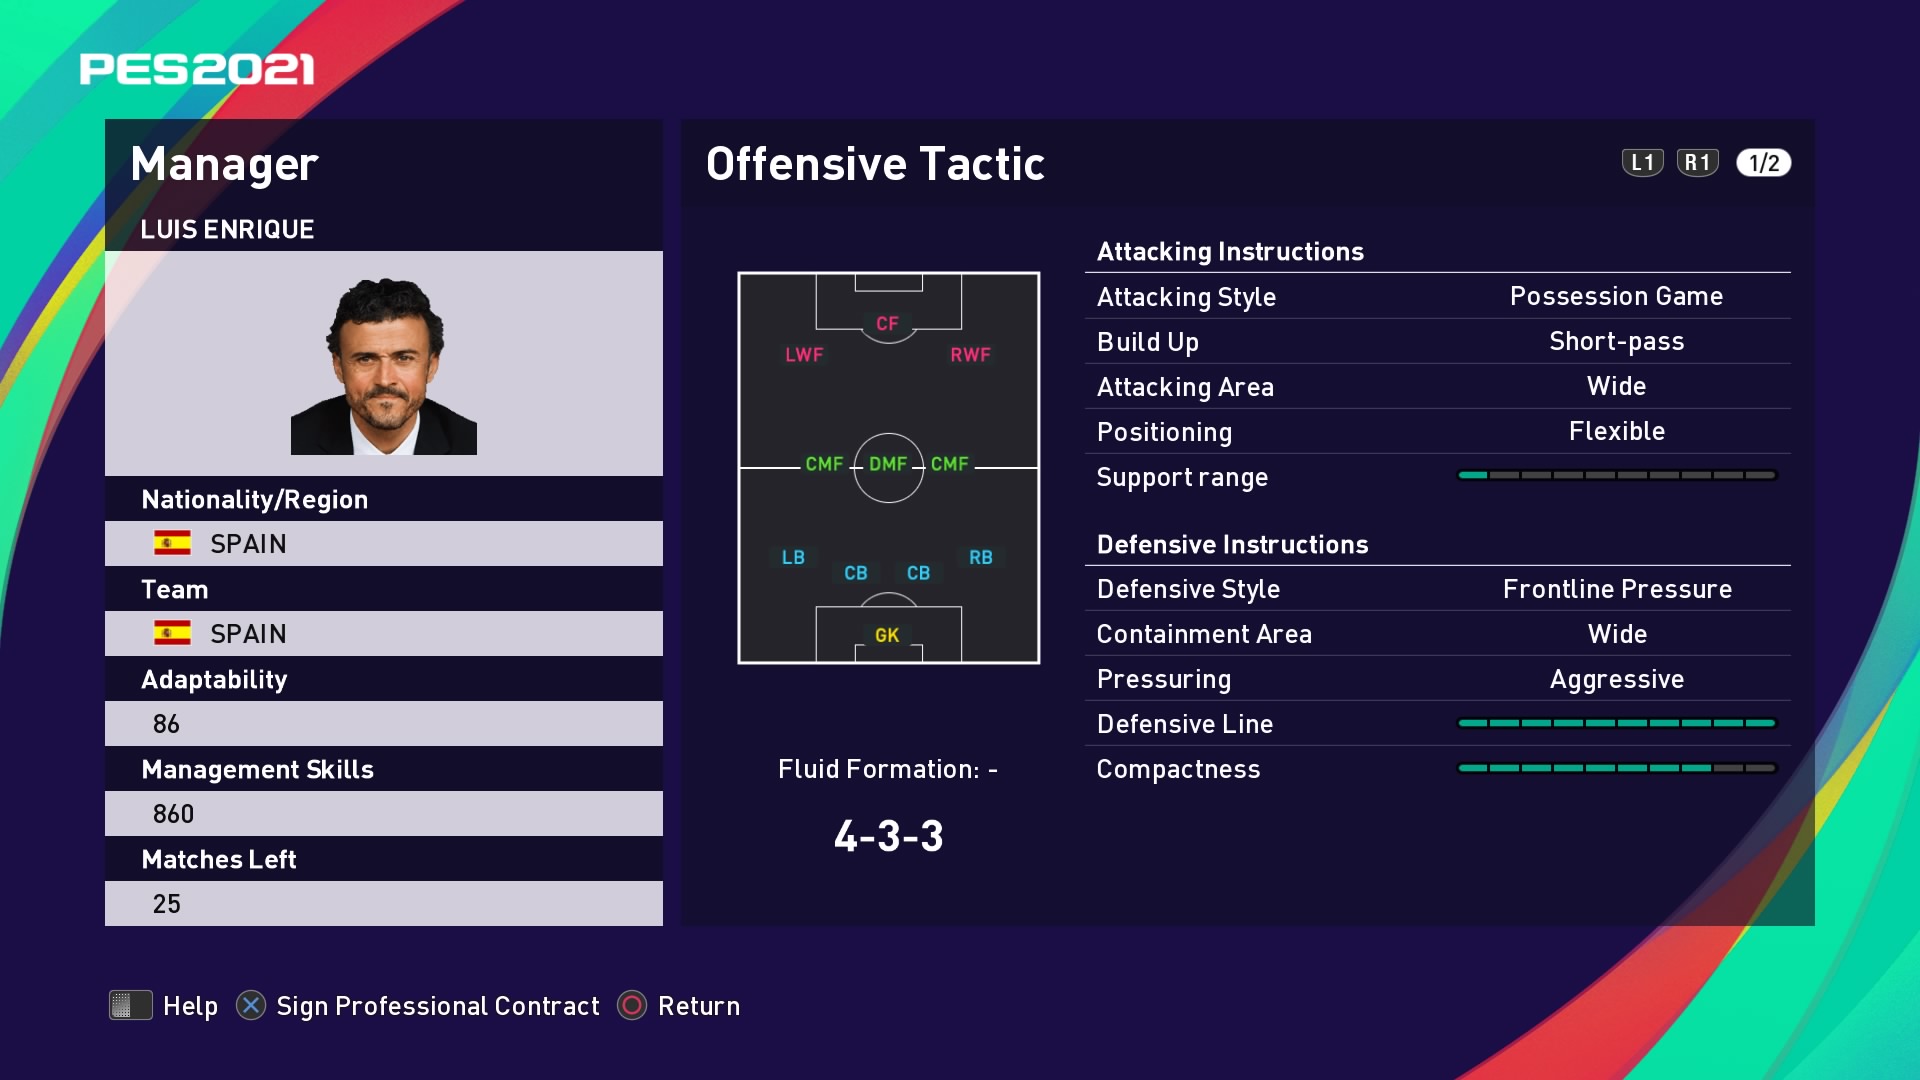 Luis Enrique Offensive Tactic in PES 2021 myClub